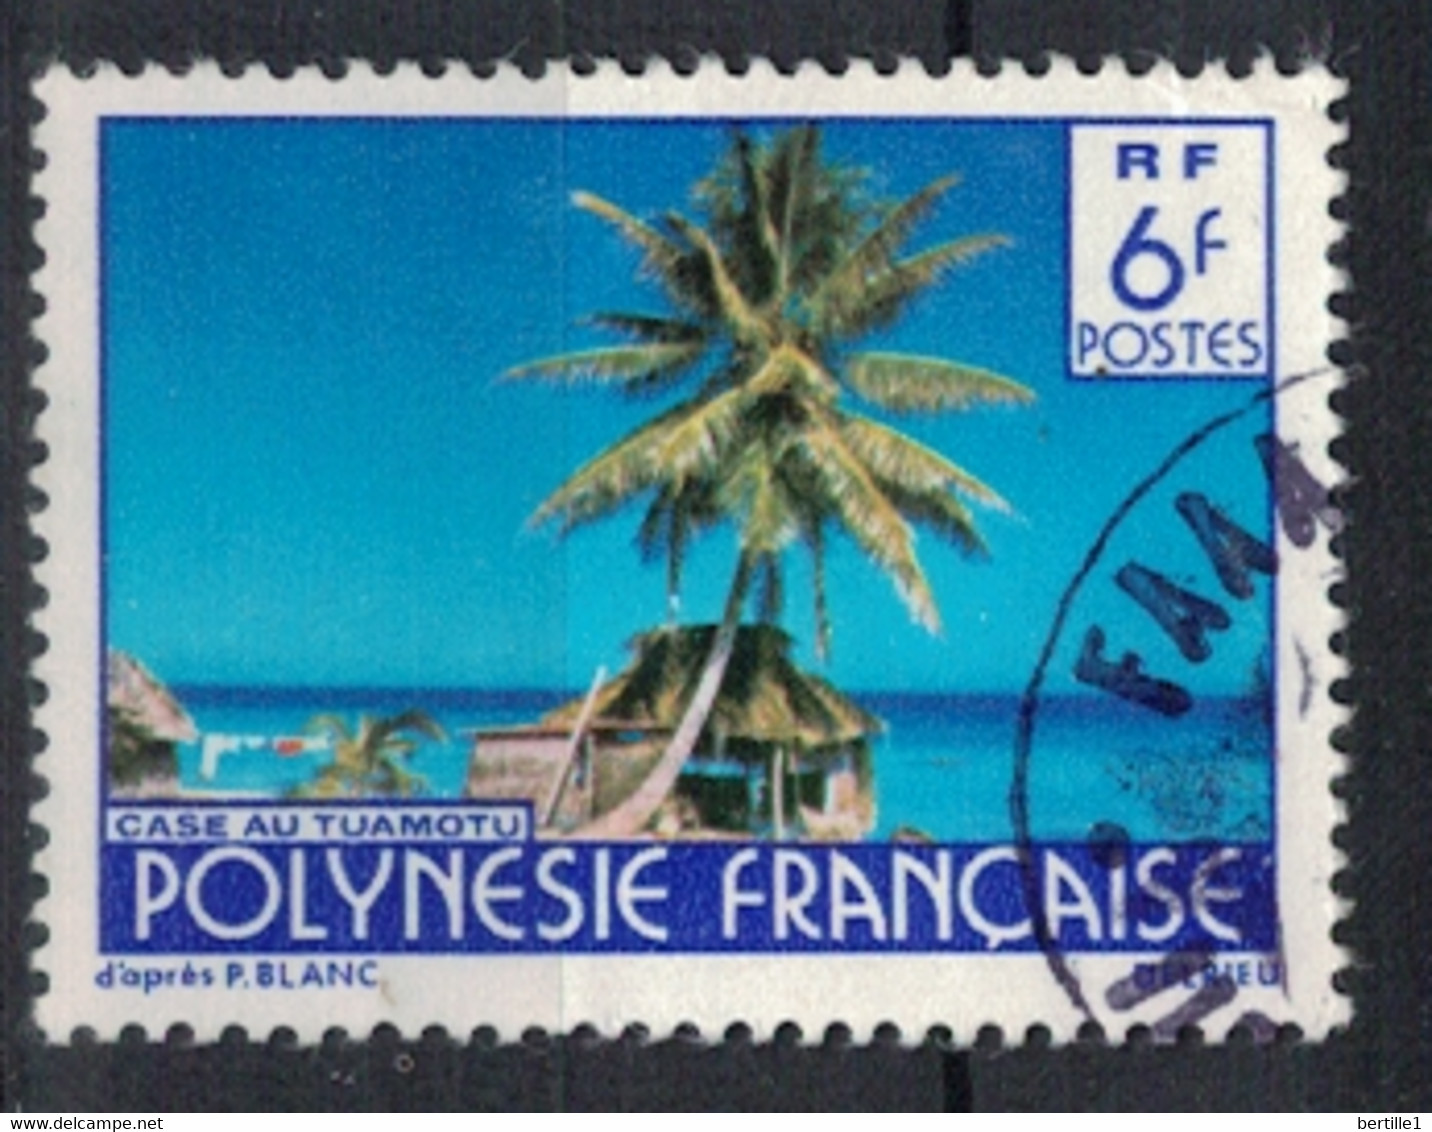 POLYNESIE FRANCAISE           N°  YVERT  137   OBLITERE     ( OB    06/ 37 ) - Gebruikt